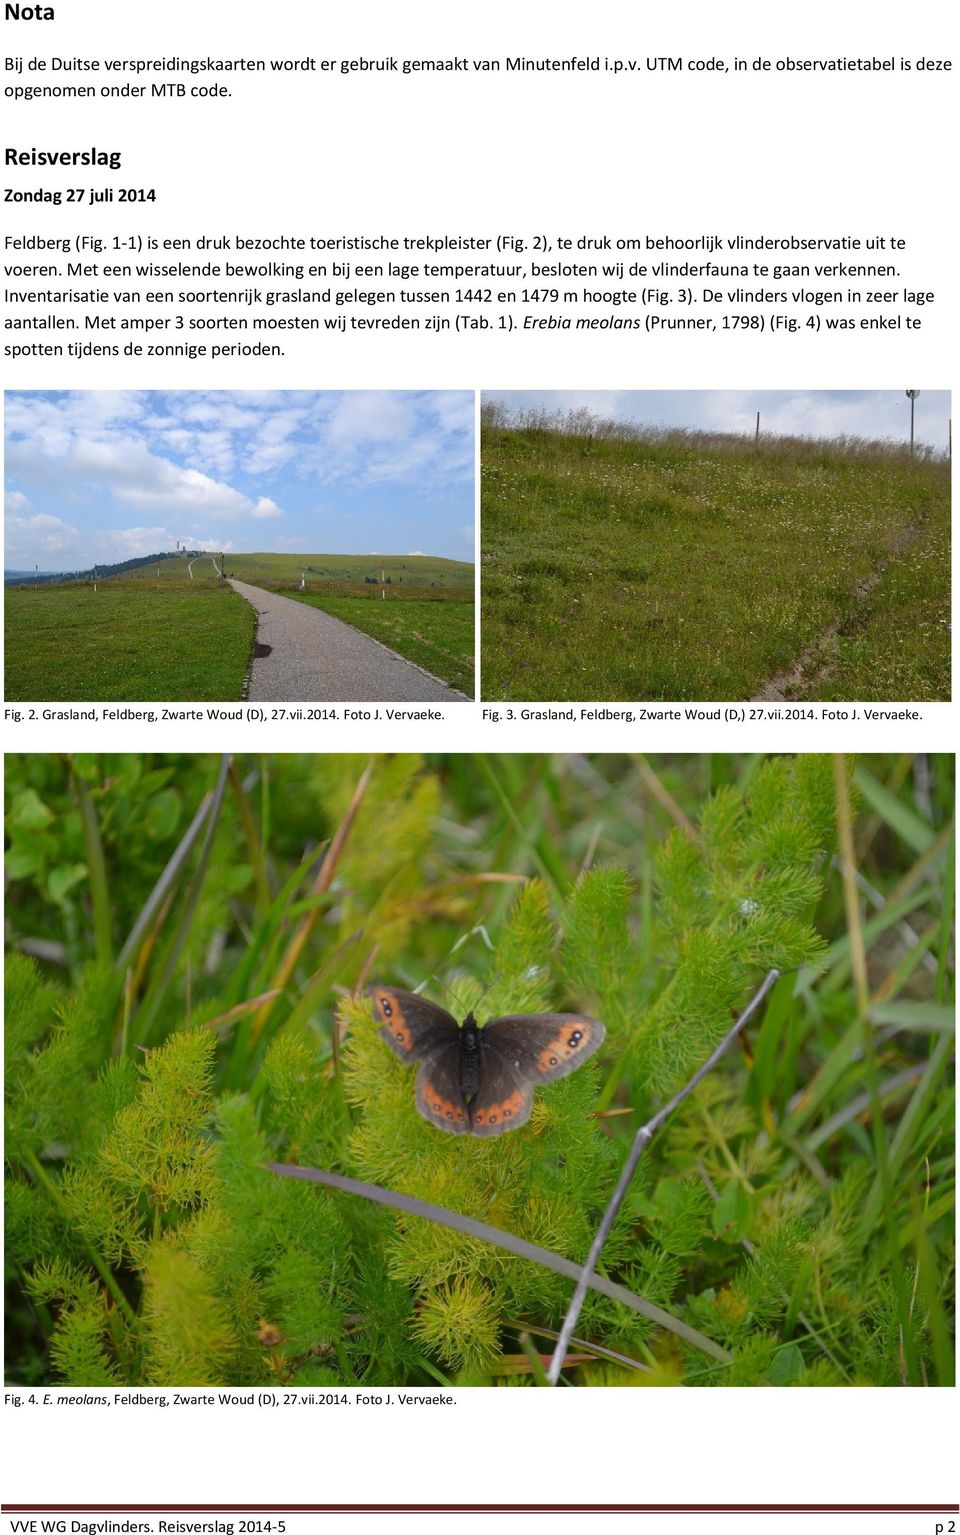 Met een wisselende bewolking en bij een lage temperatuur, besloten wij de vlinderfauna te gaan verkennen. Inventarisatie van een soortenrijk grasland gelegen tussen 1442 en 1479 m hoogte (Fig. 3).